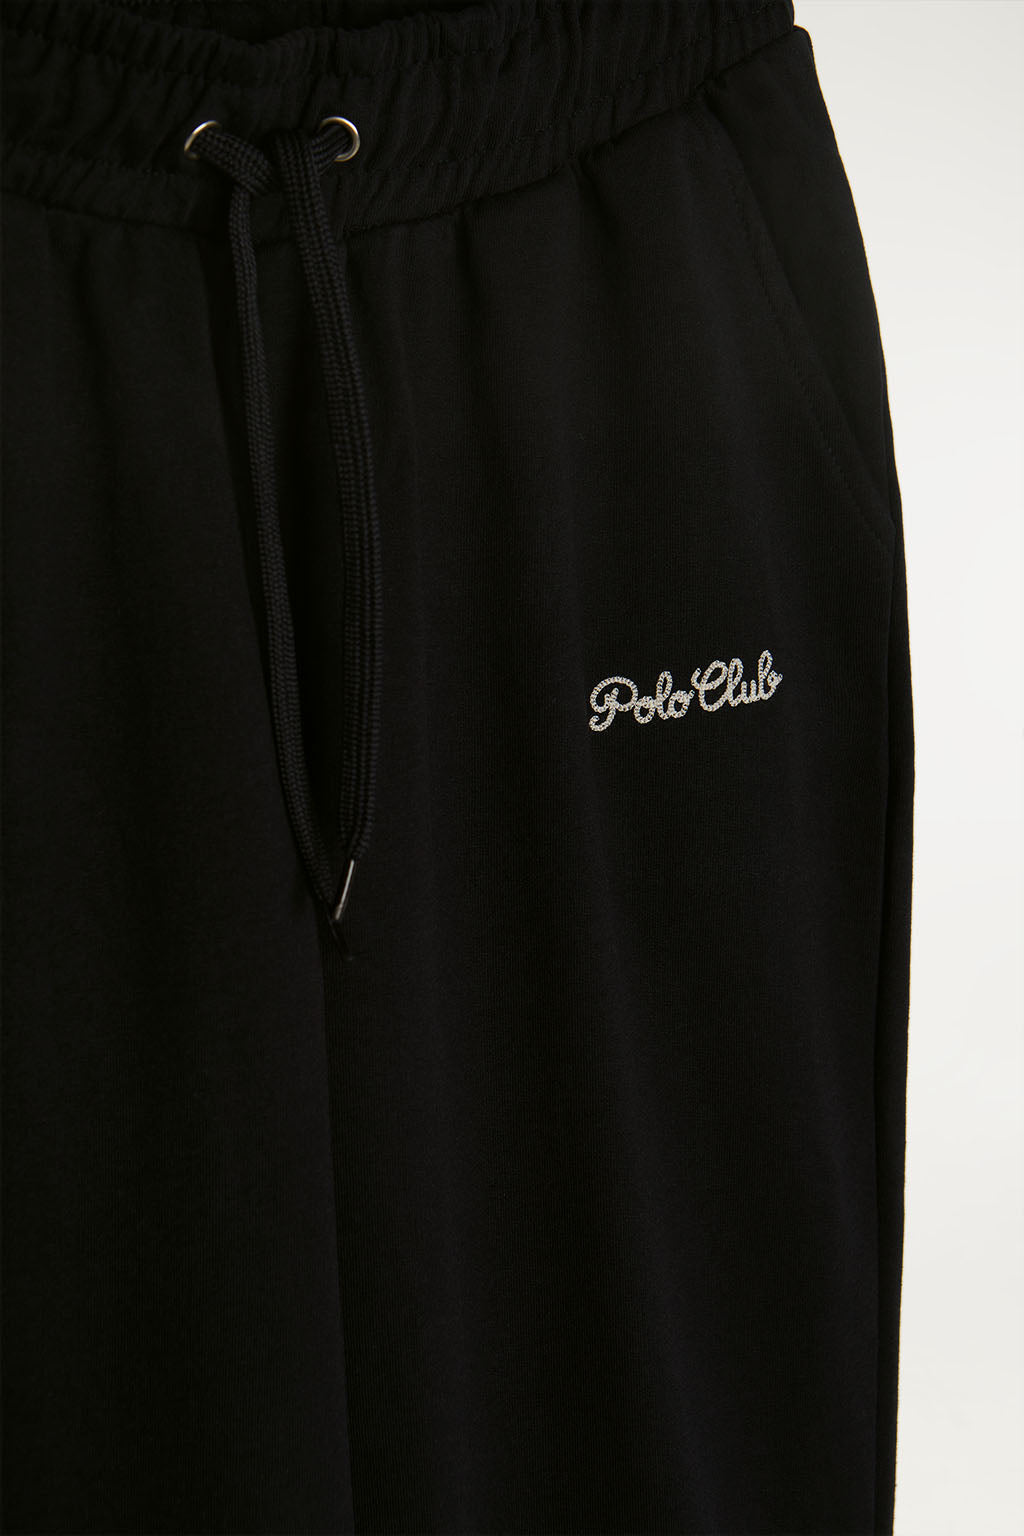 Pantalón negro jogger con detalle bordado cadeneta a contraste | MUJER  | POLO CLUB